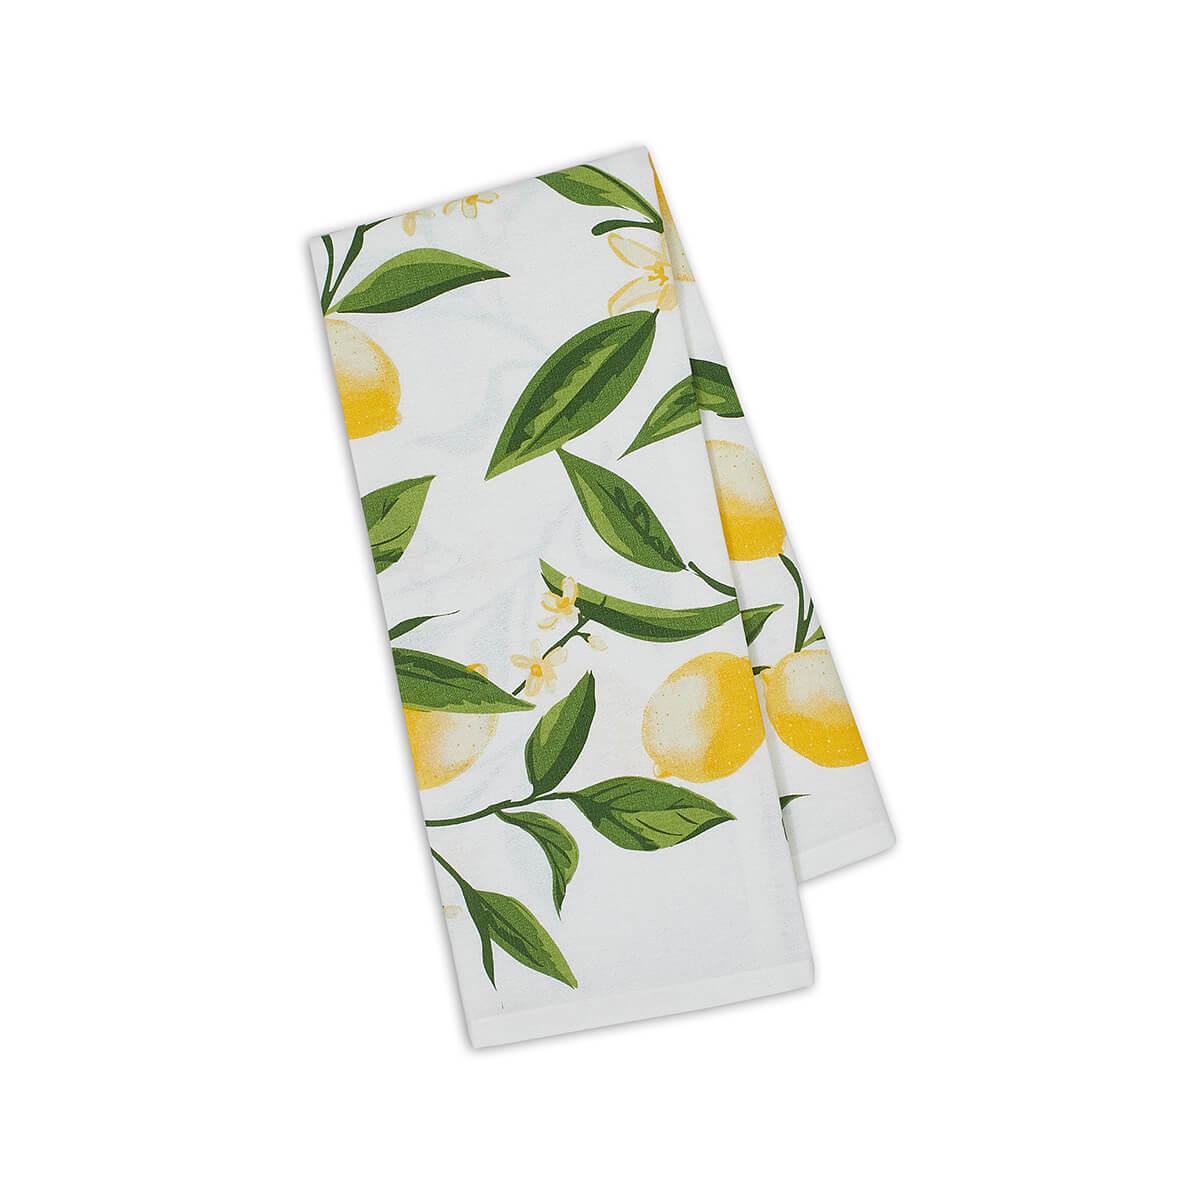  Lemon Bliss Printed Dishtowel